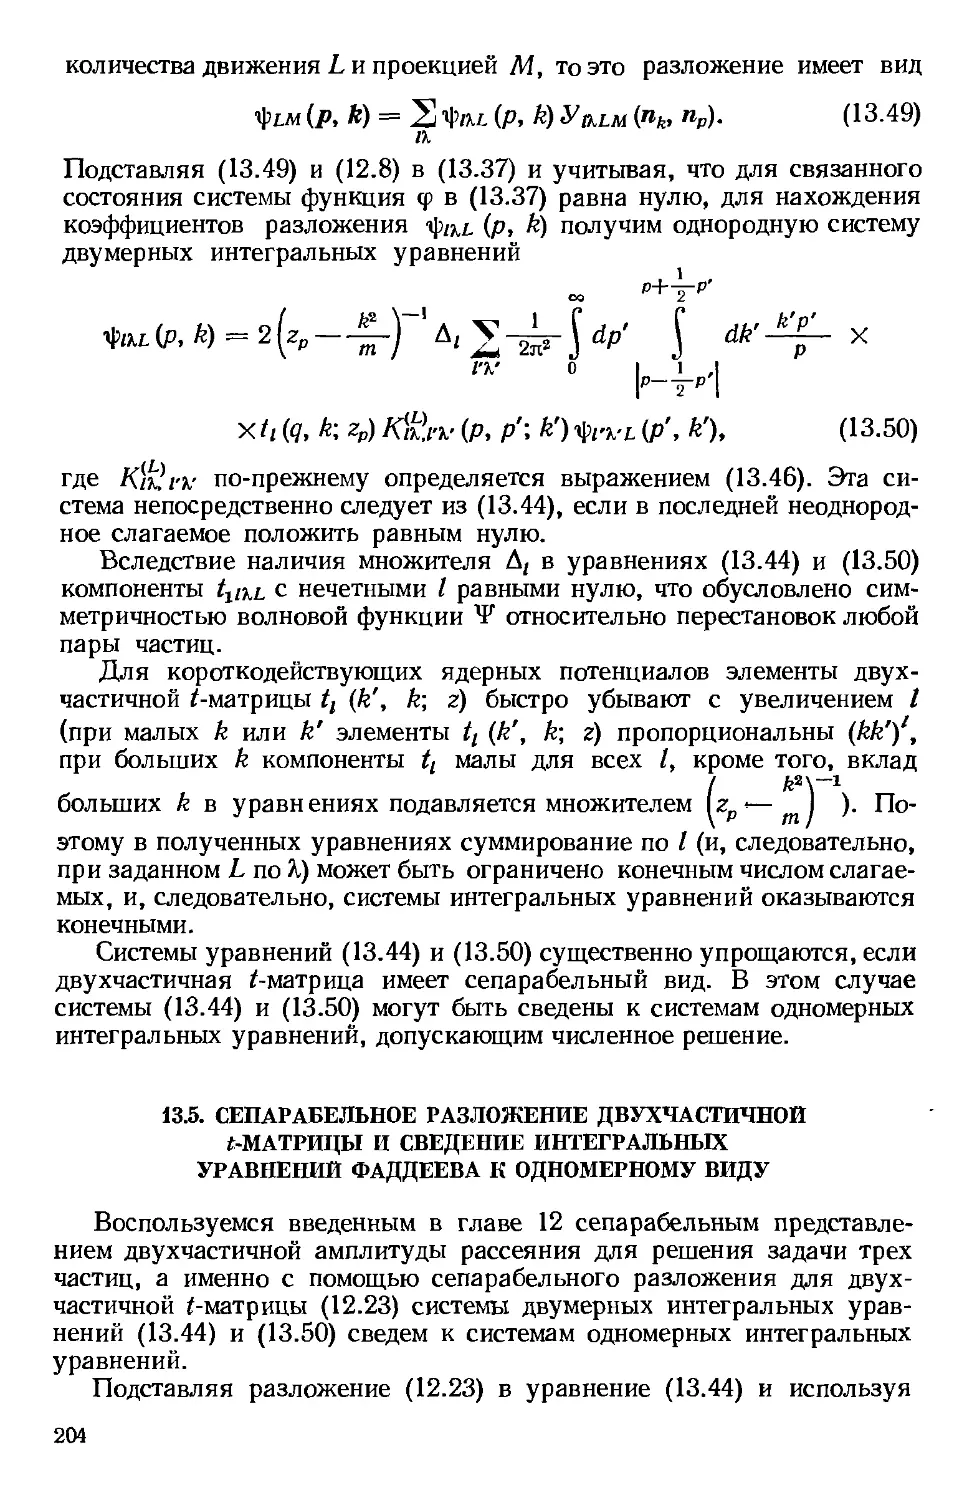 13.5. Сепарабельное разложение двухчастичной t-матрицы и сведение интегральных уравнений Фаддеева к одномерному виду